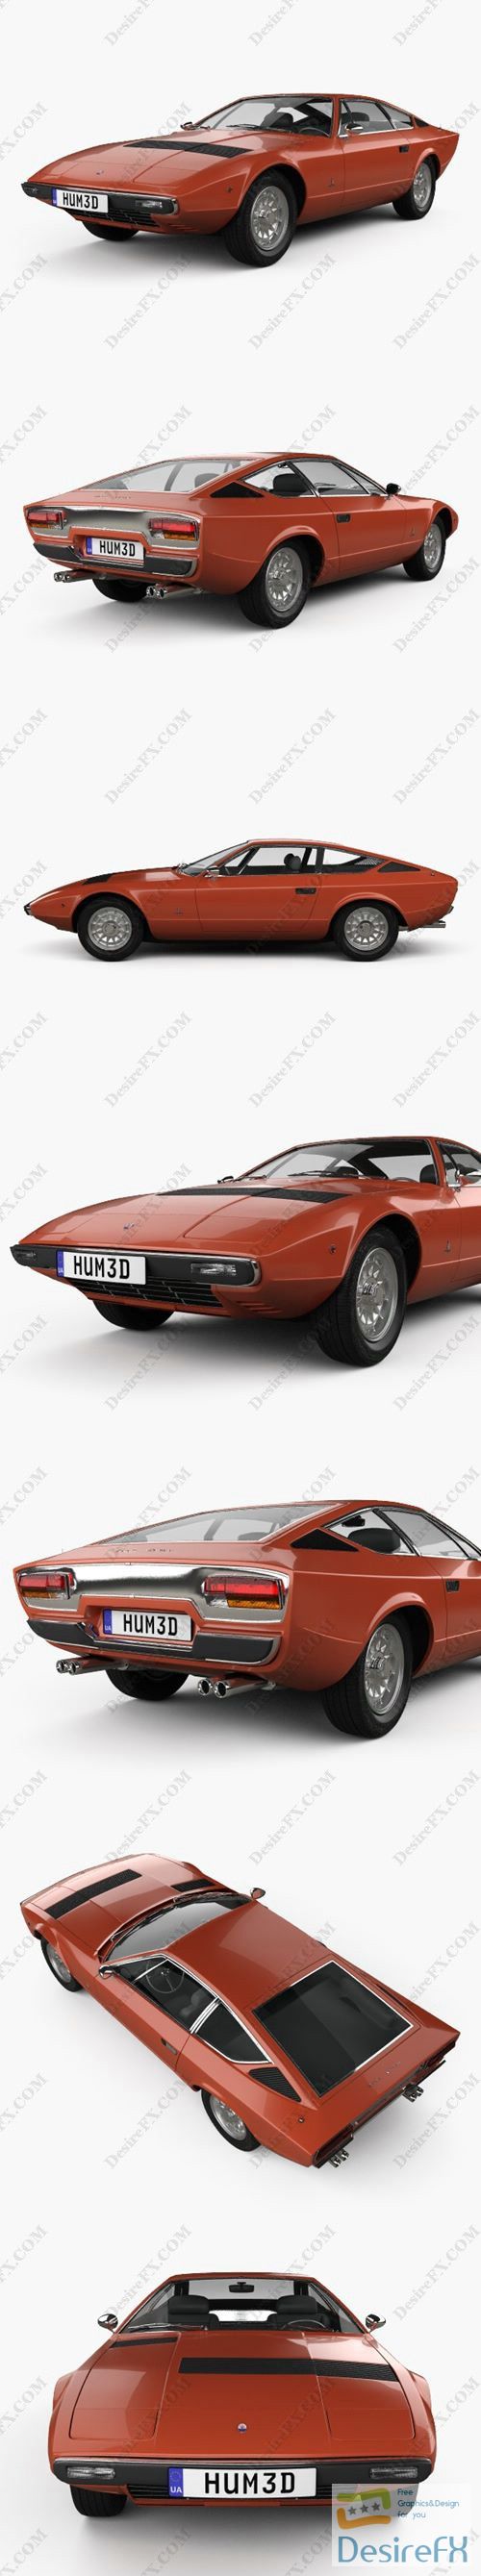 Maserati Khamsin 1977 3D Model